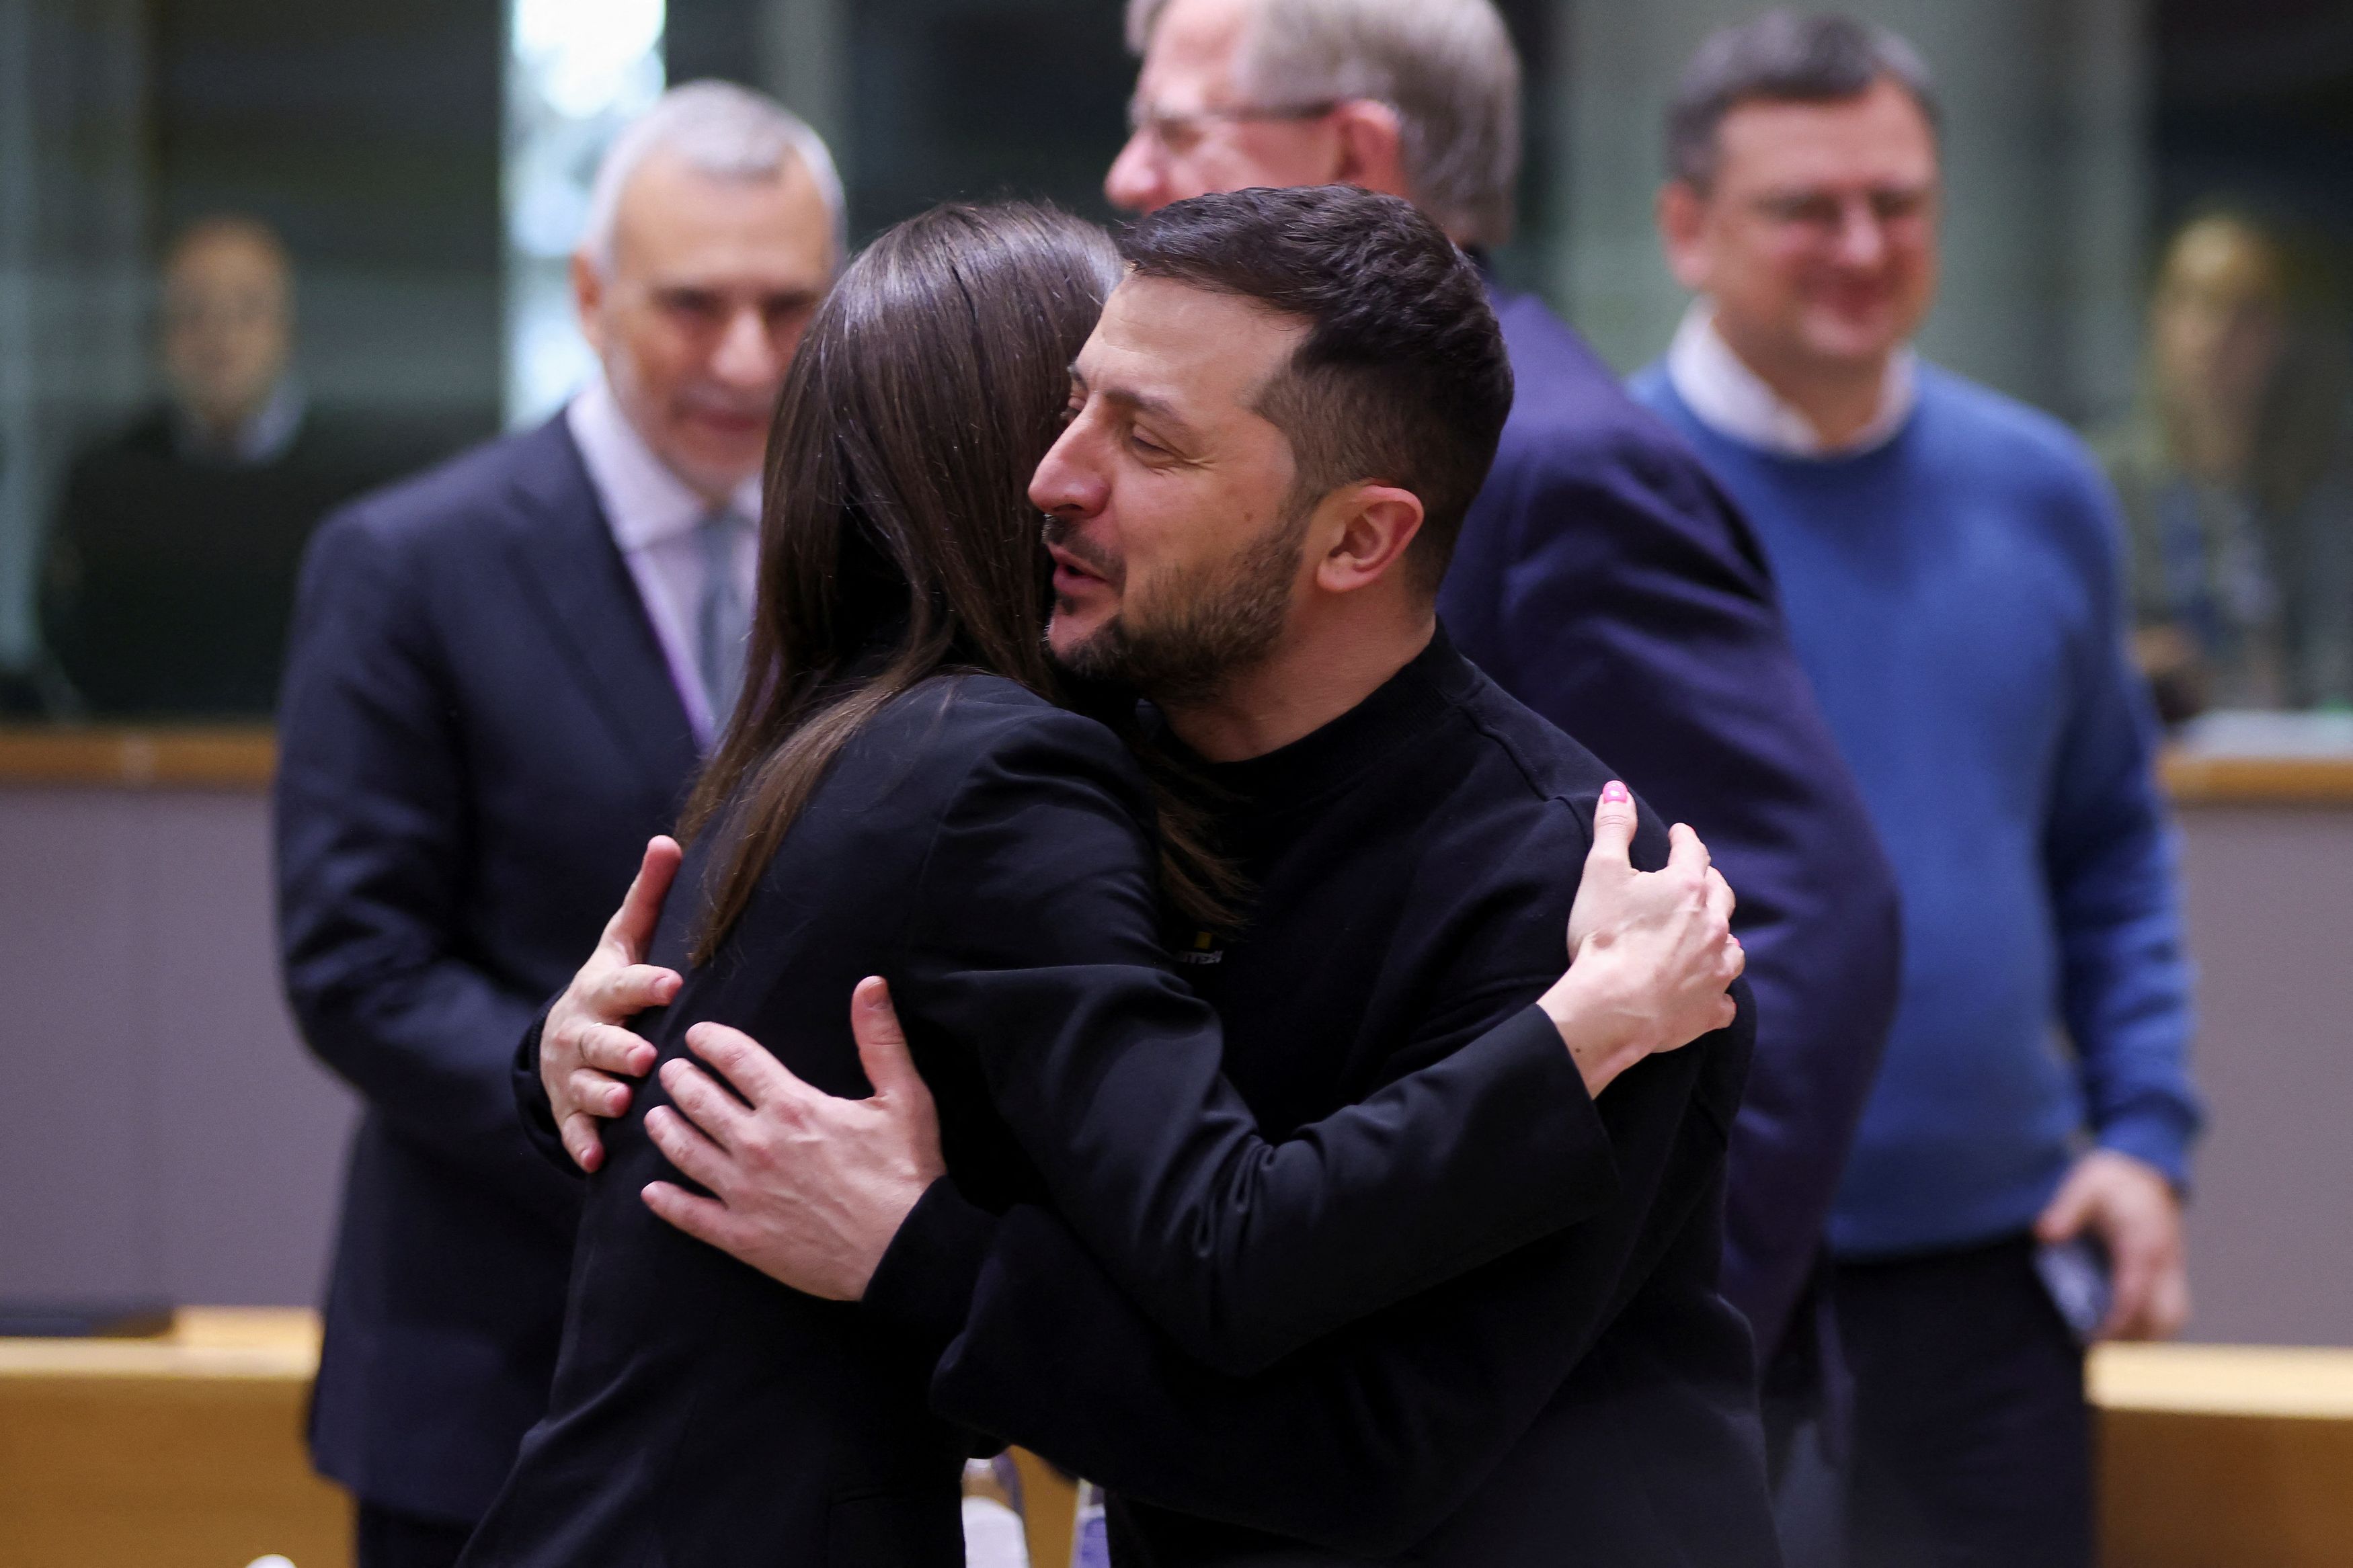 Βολοντίμιρ Ζελένσκι: Η αγκαλιά με την Σάνα Μαρίν που έκανε τον γύρο του διαδικτύου